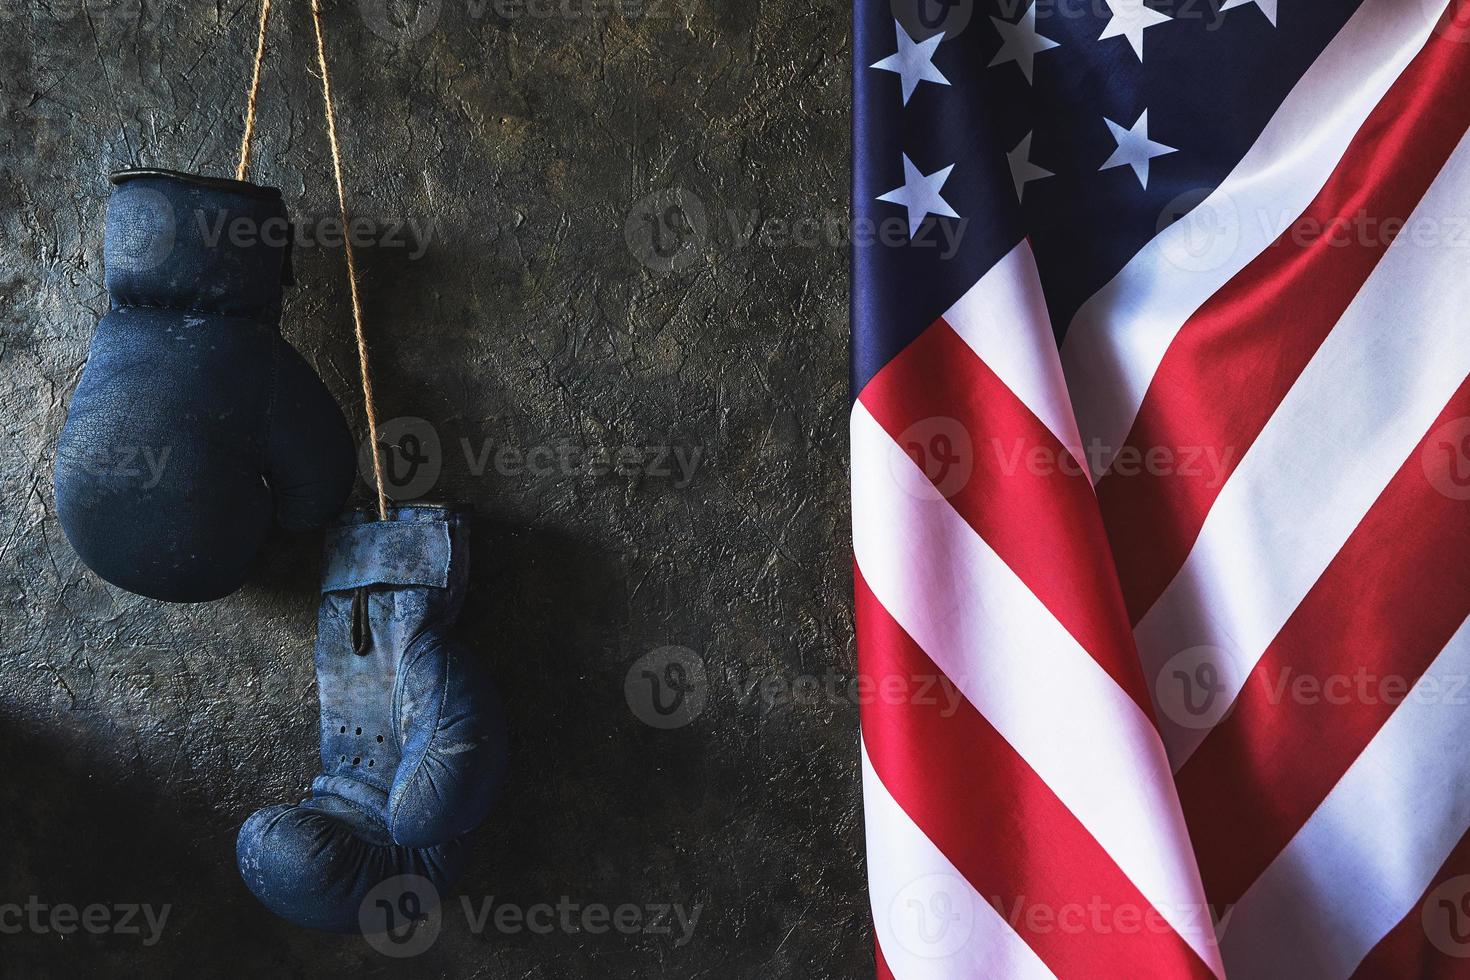 gamla boxningshandskar hänger på väggen bredvid USA:s flagga. foto